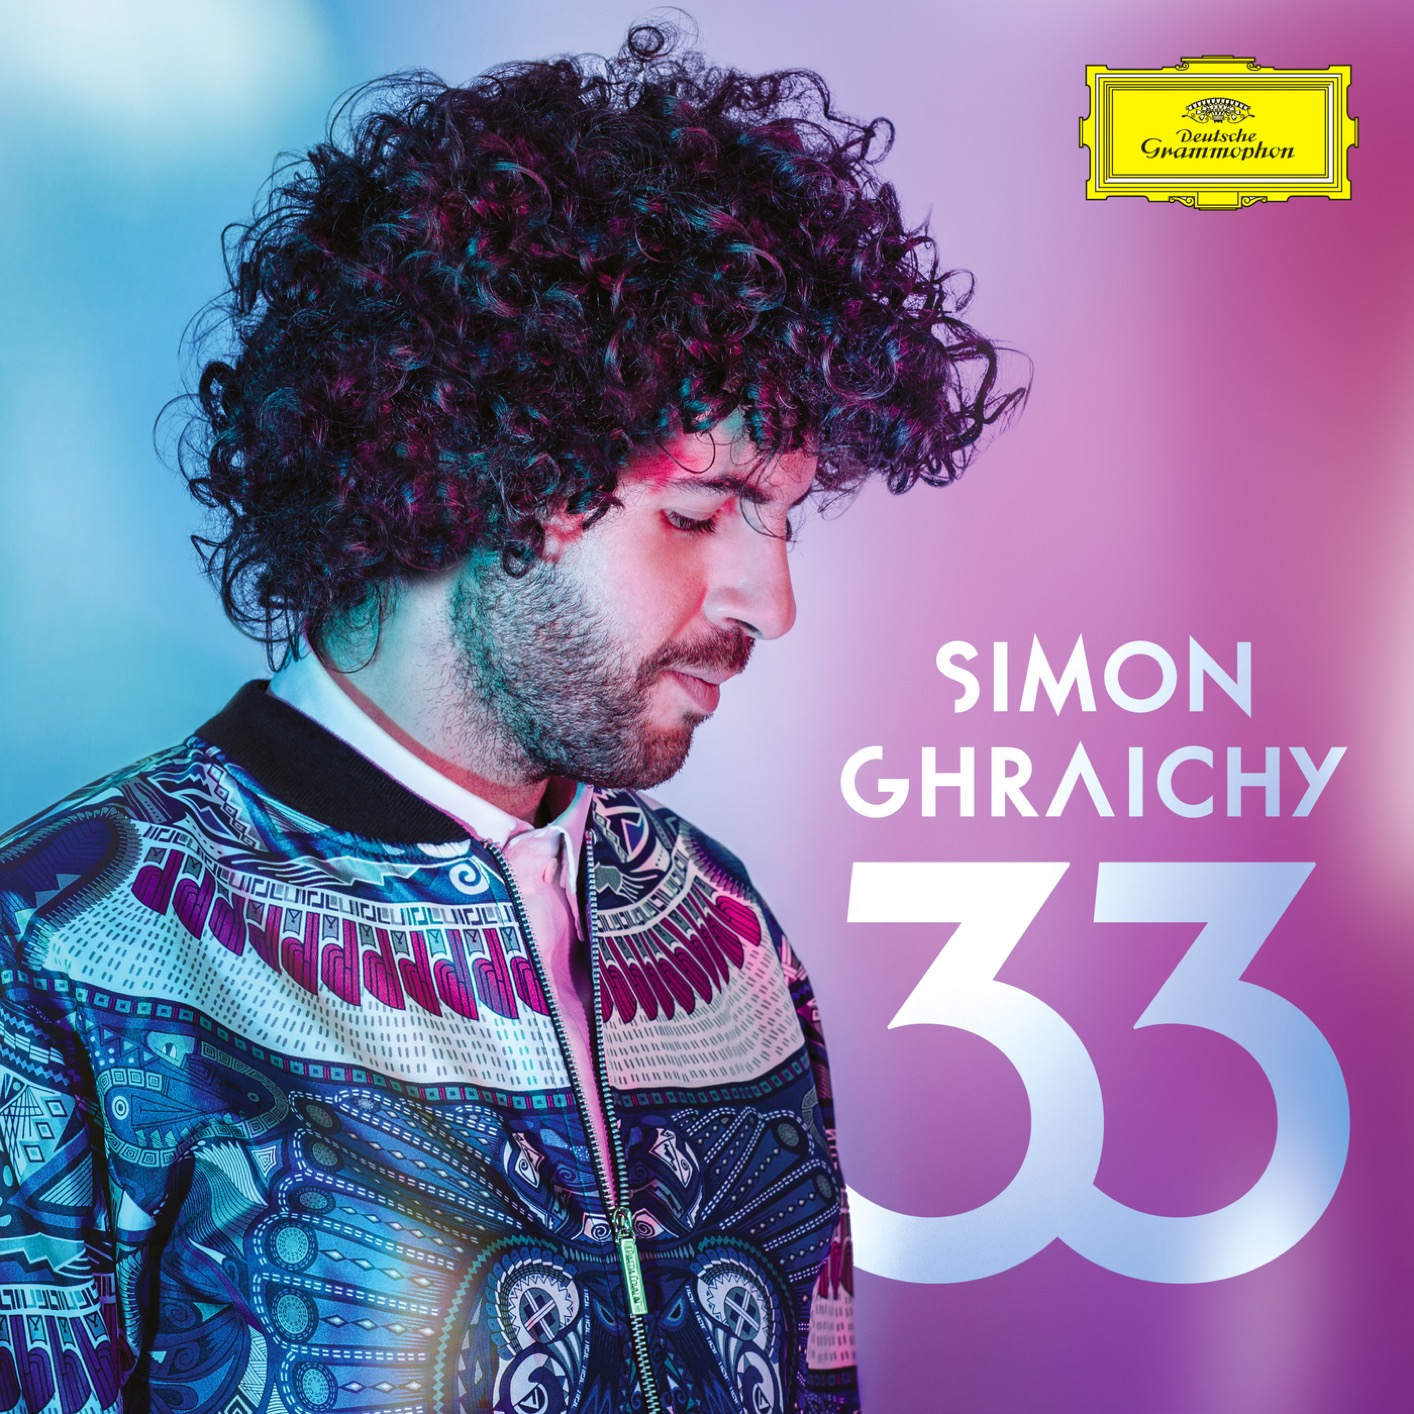 Simon Ghraichy – 33 (2019) [FLAC 24bit/96kHz]